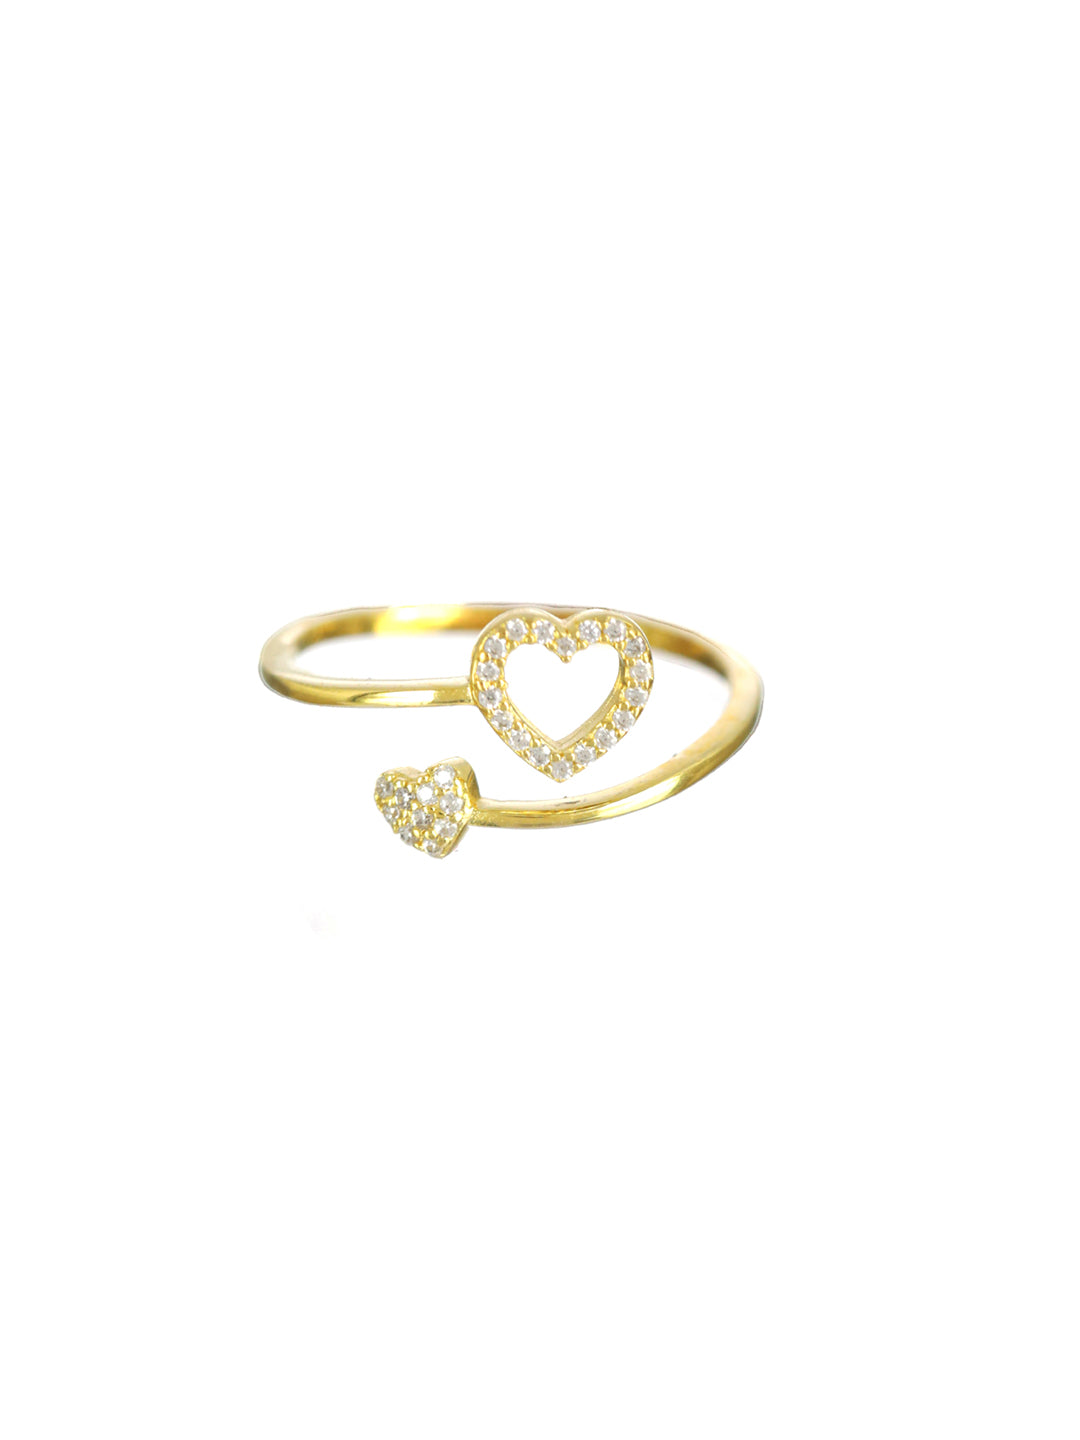 Sheer by Priyaasi Hearts American Diamond Sterling Silver Ring